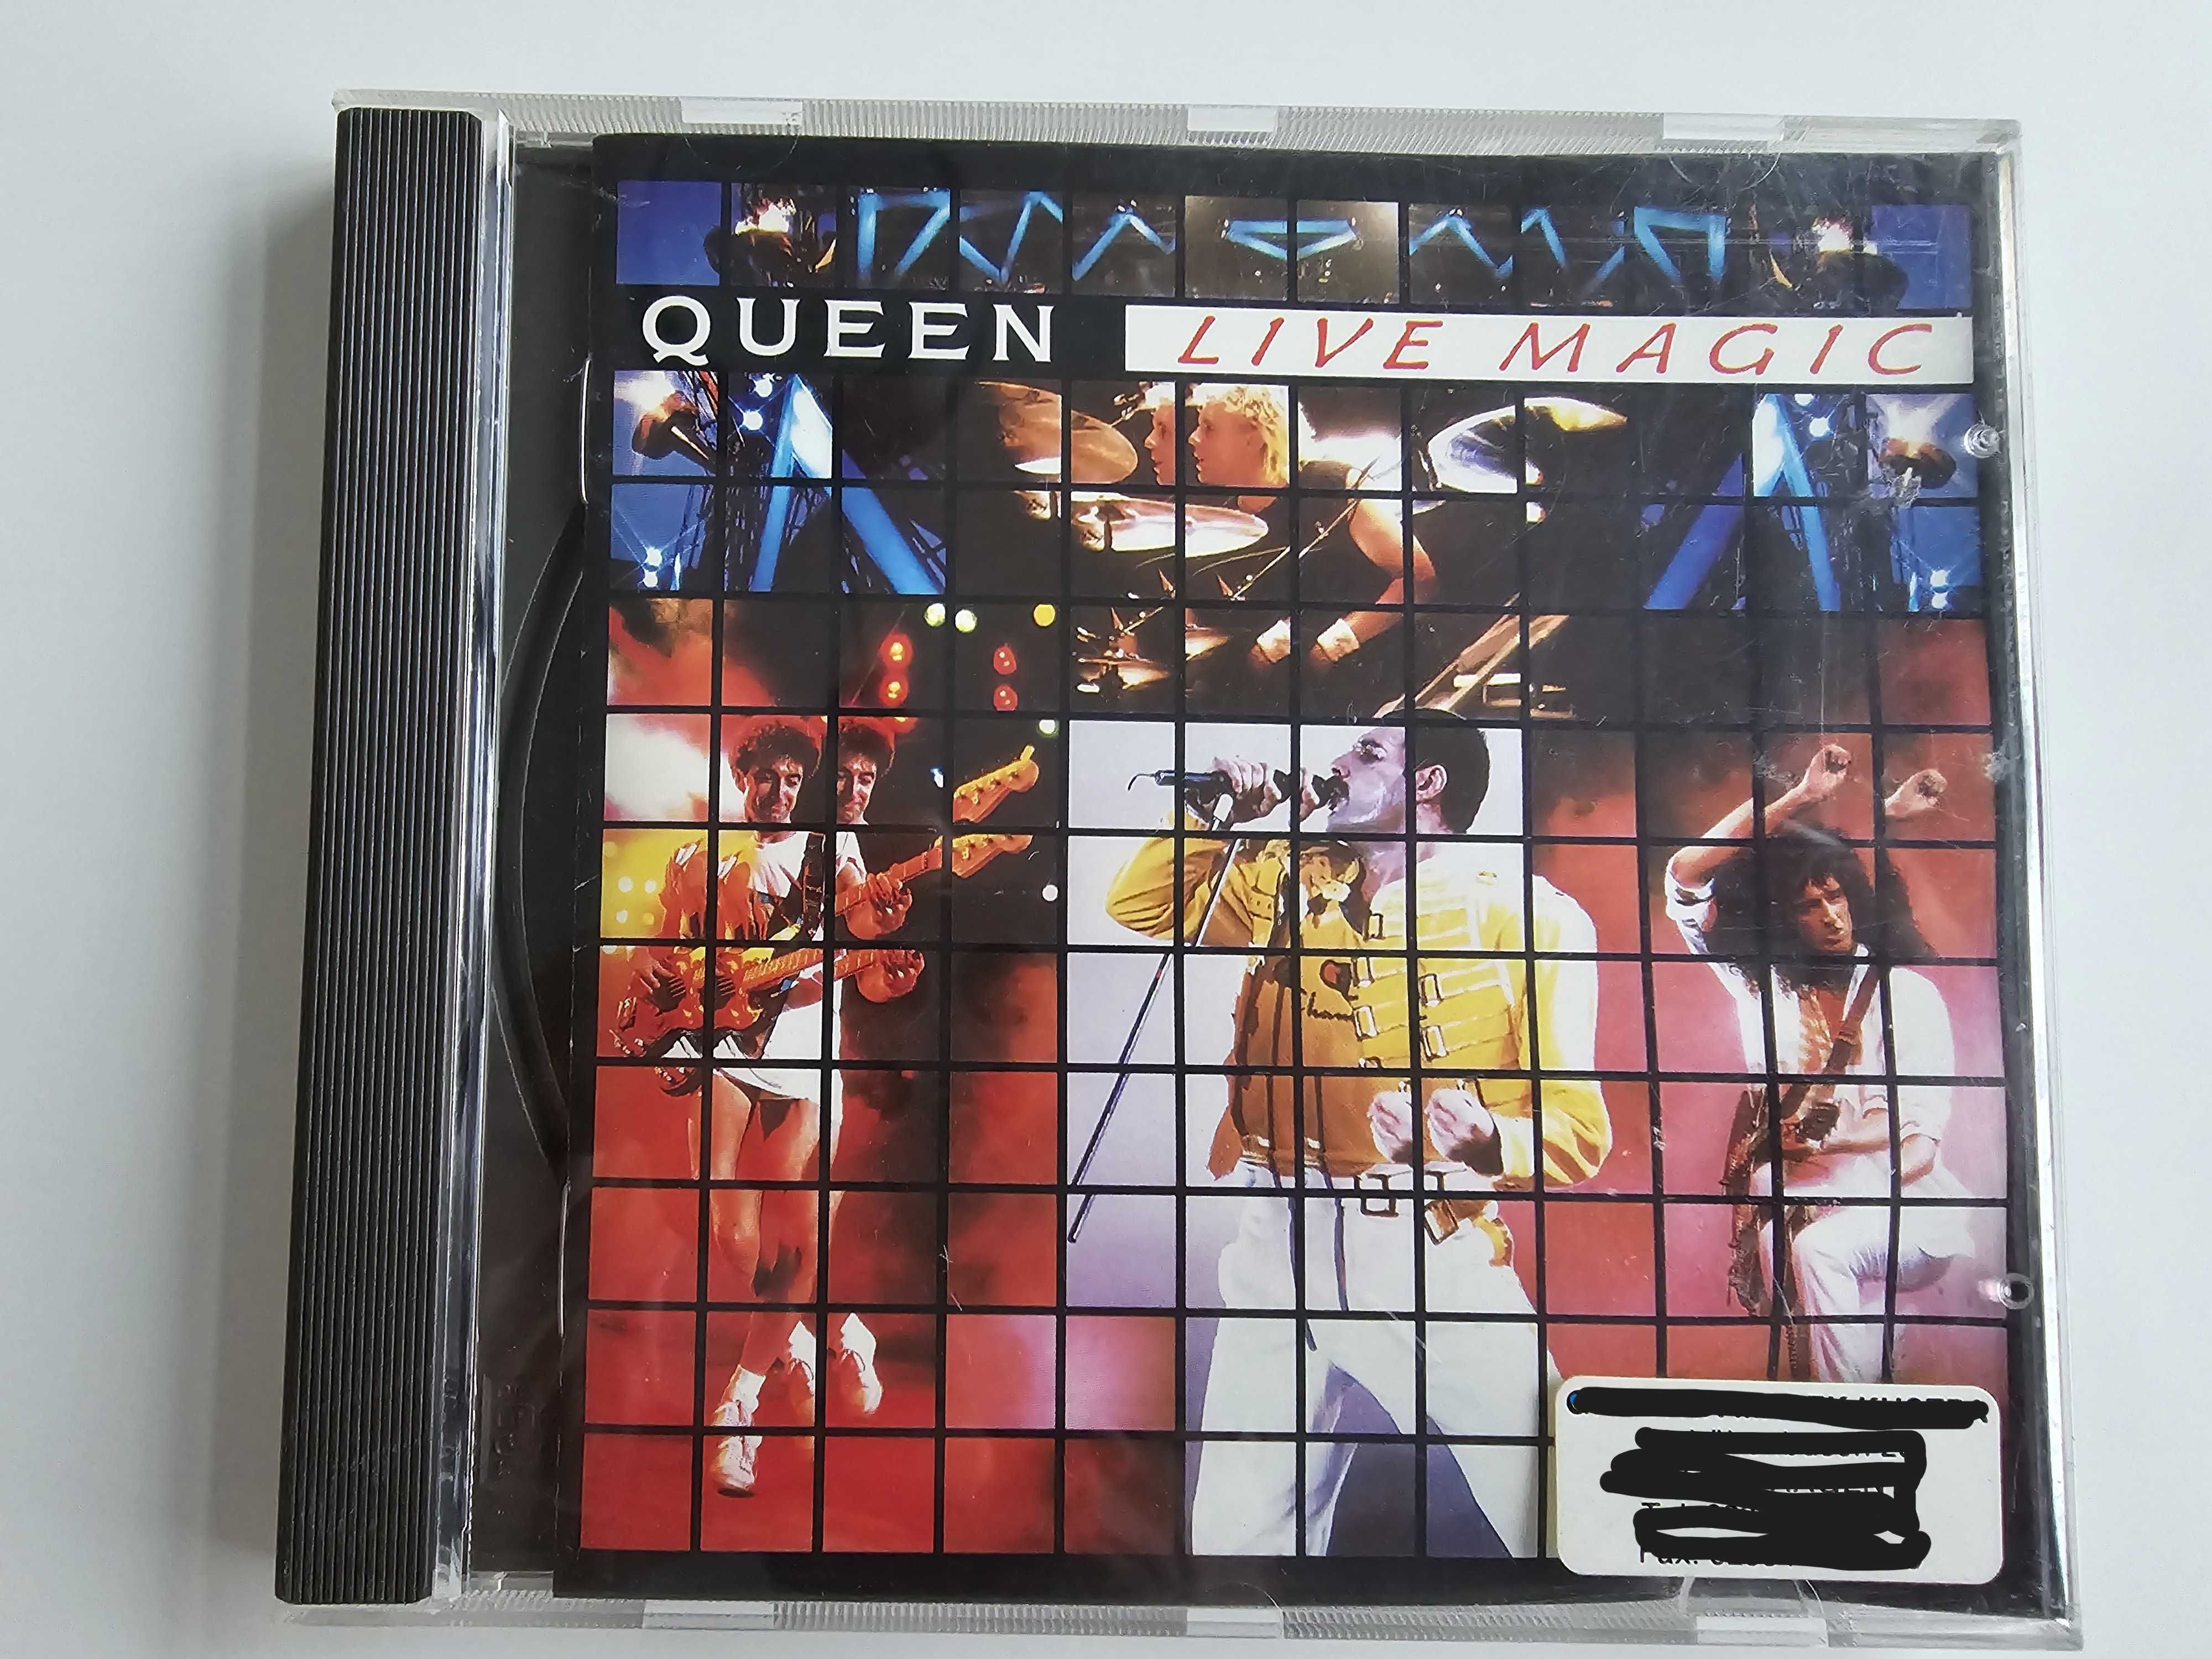 Queen - Live Magic CD 1986.